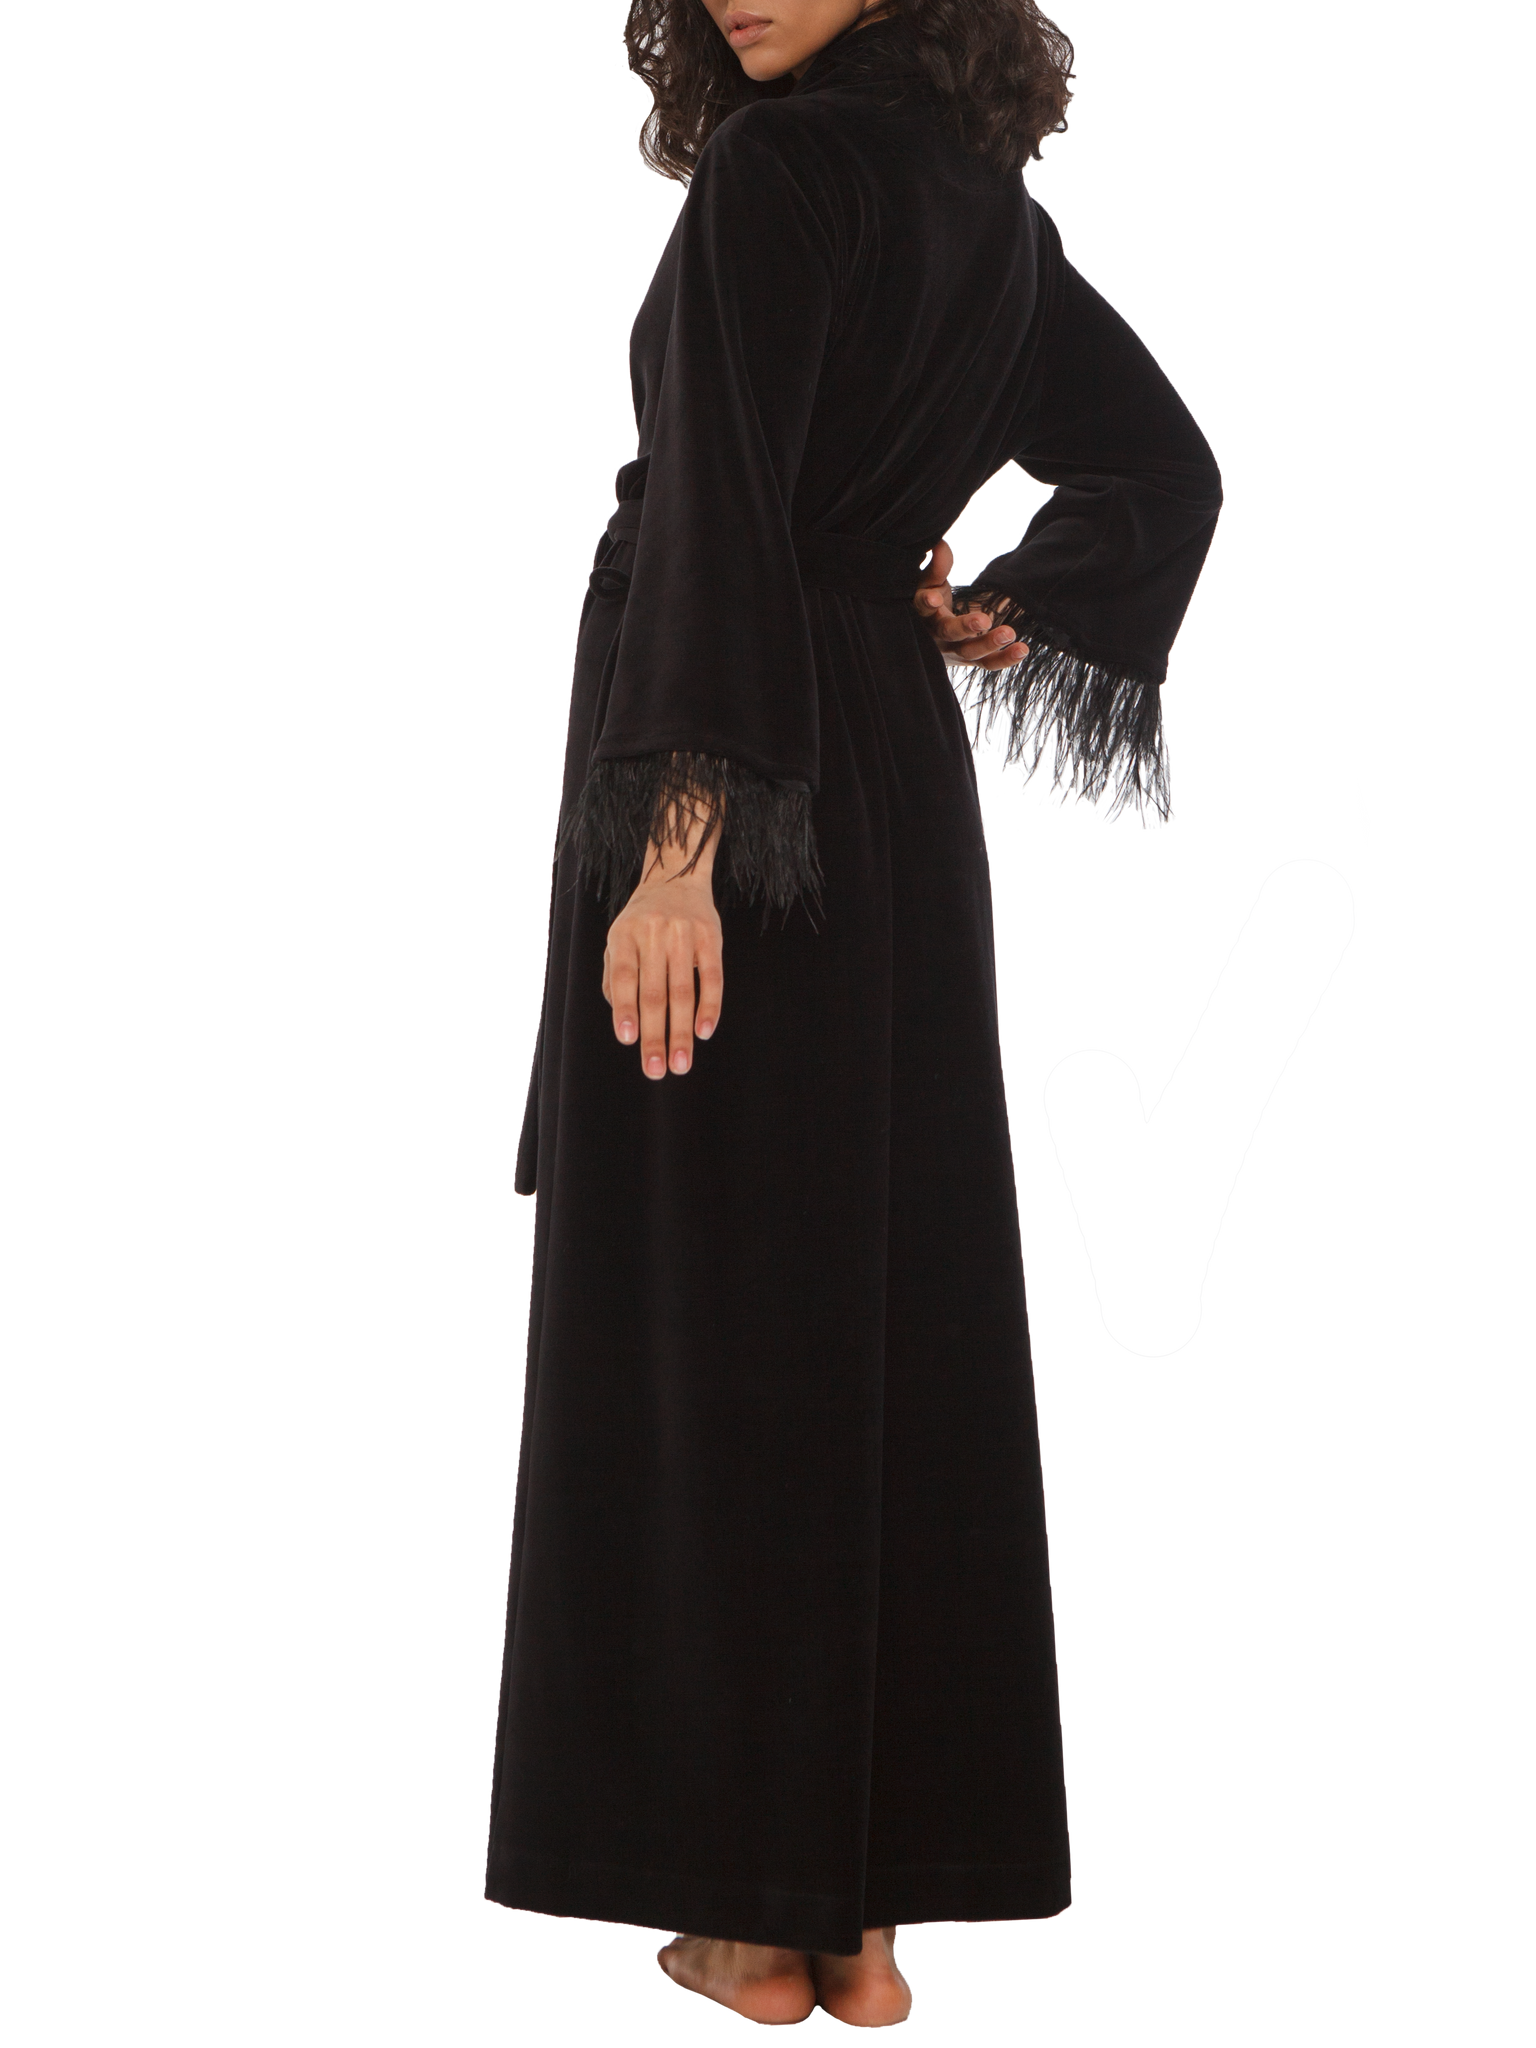 Julie длинный черный халат велюровый с перьями Limited edition